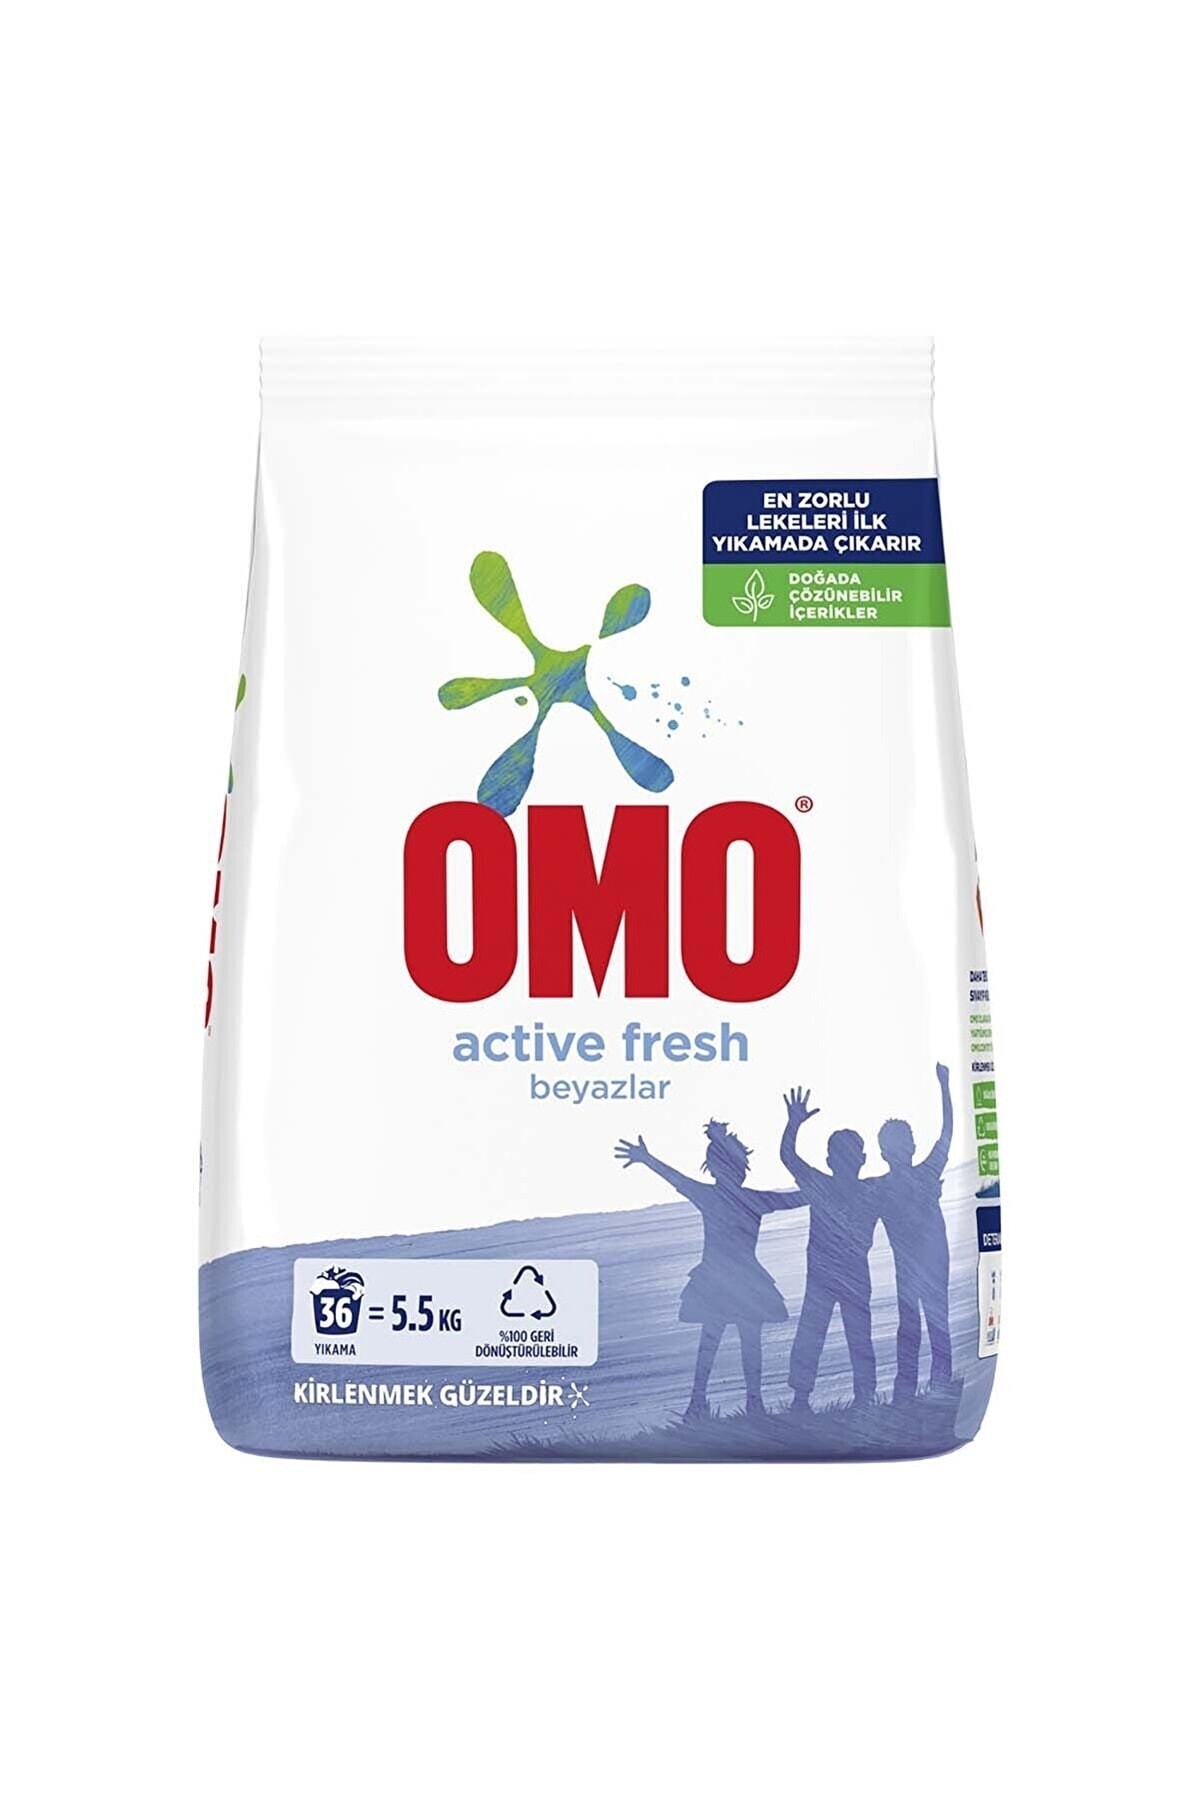 Omo Active Fresh Beyazlar Için Toz Çamaşır Deterjanı 5.5 Kg 36 Yıkama